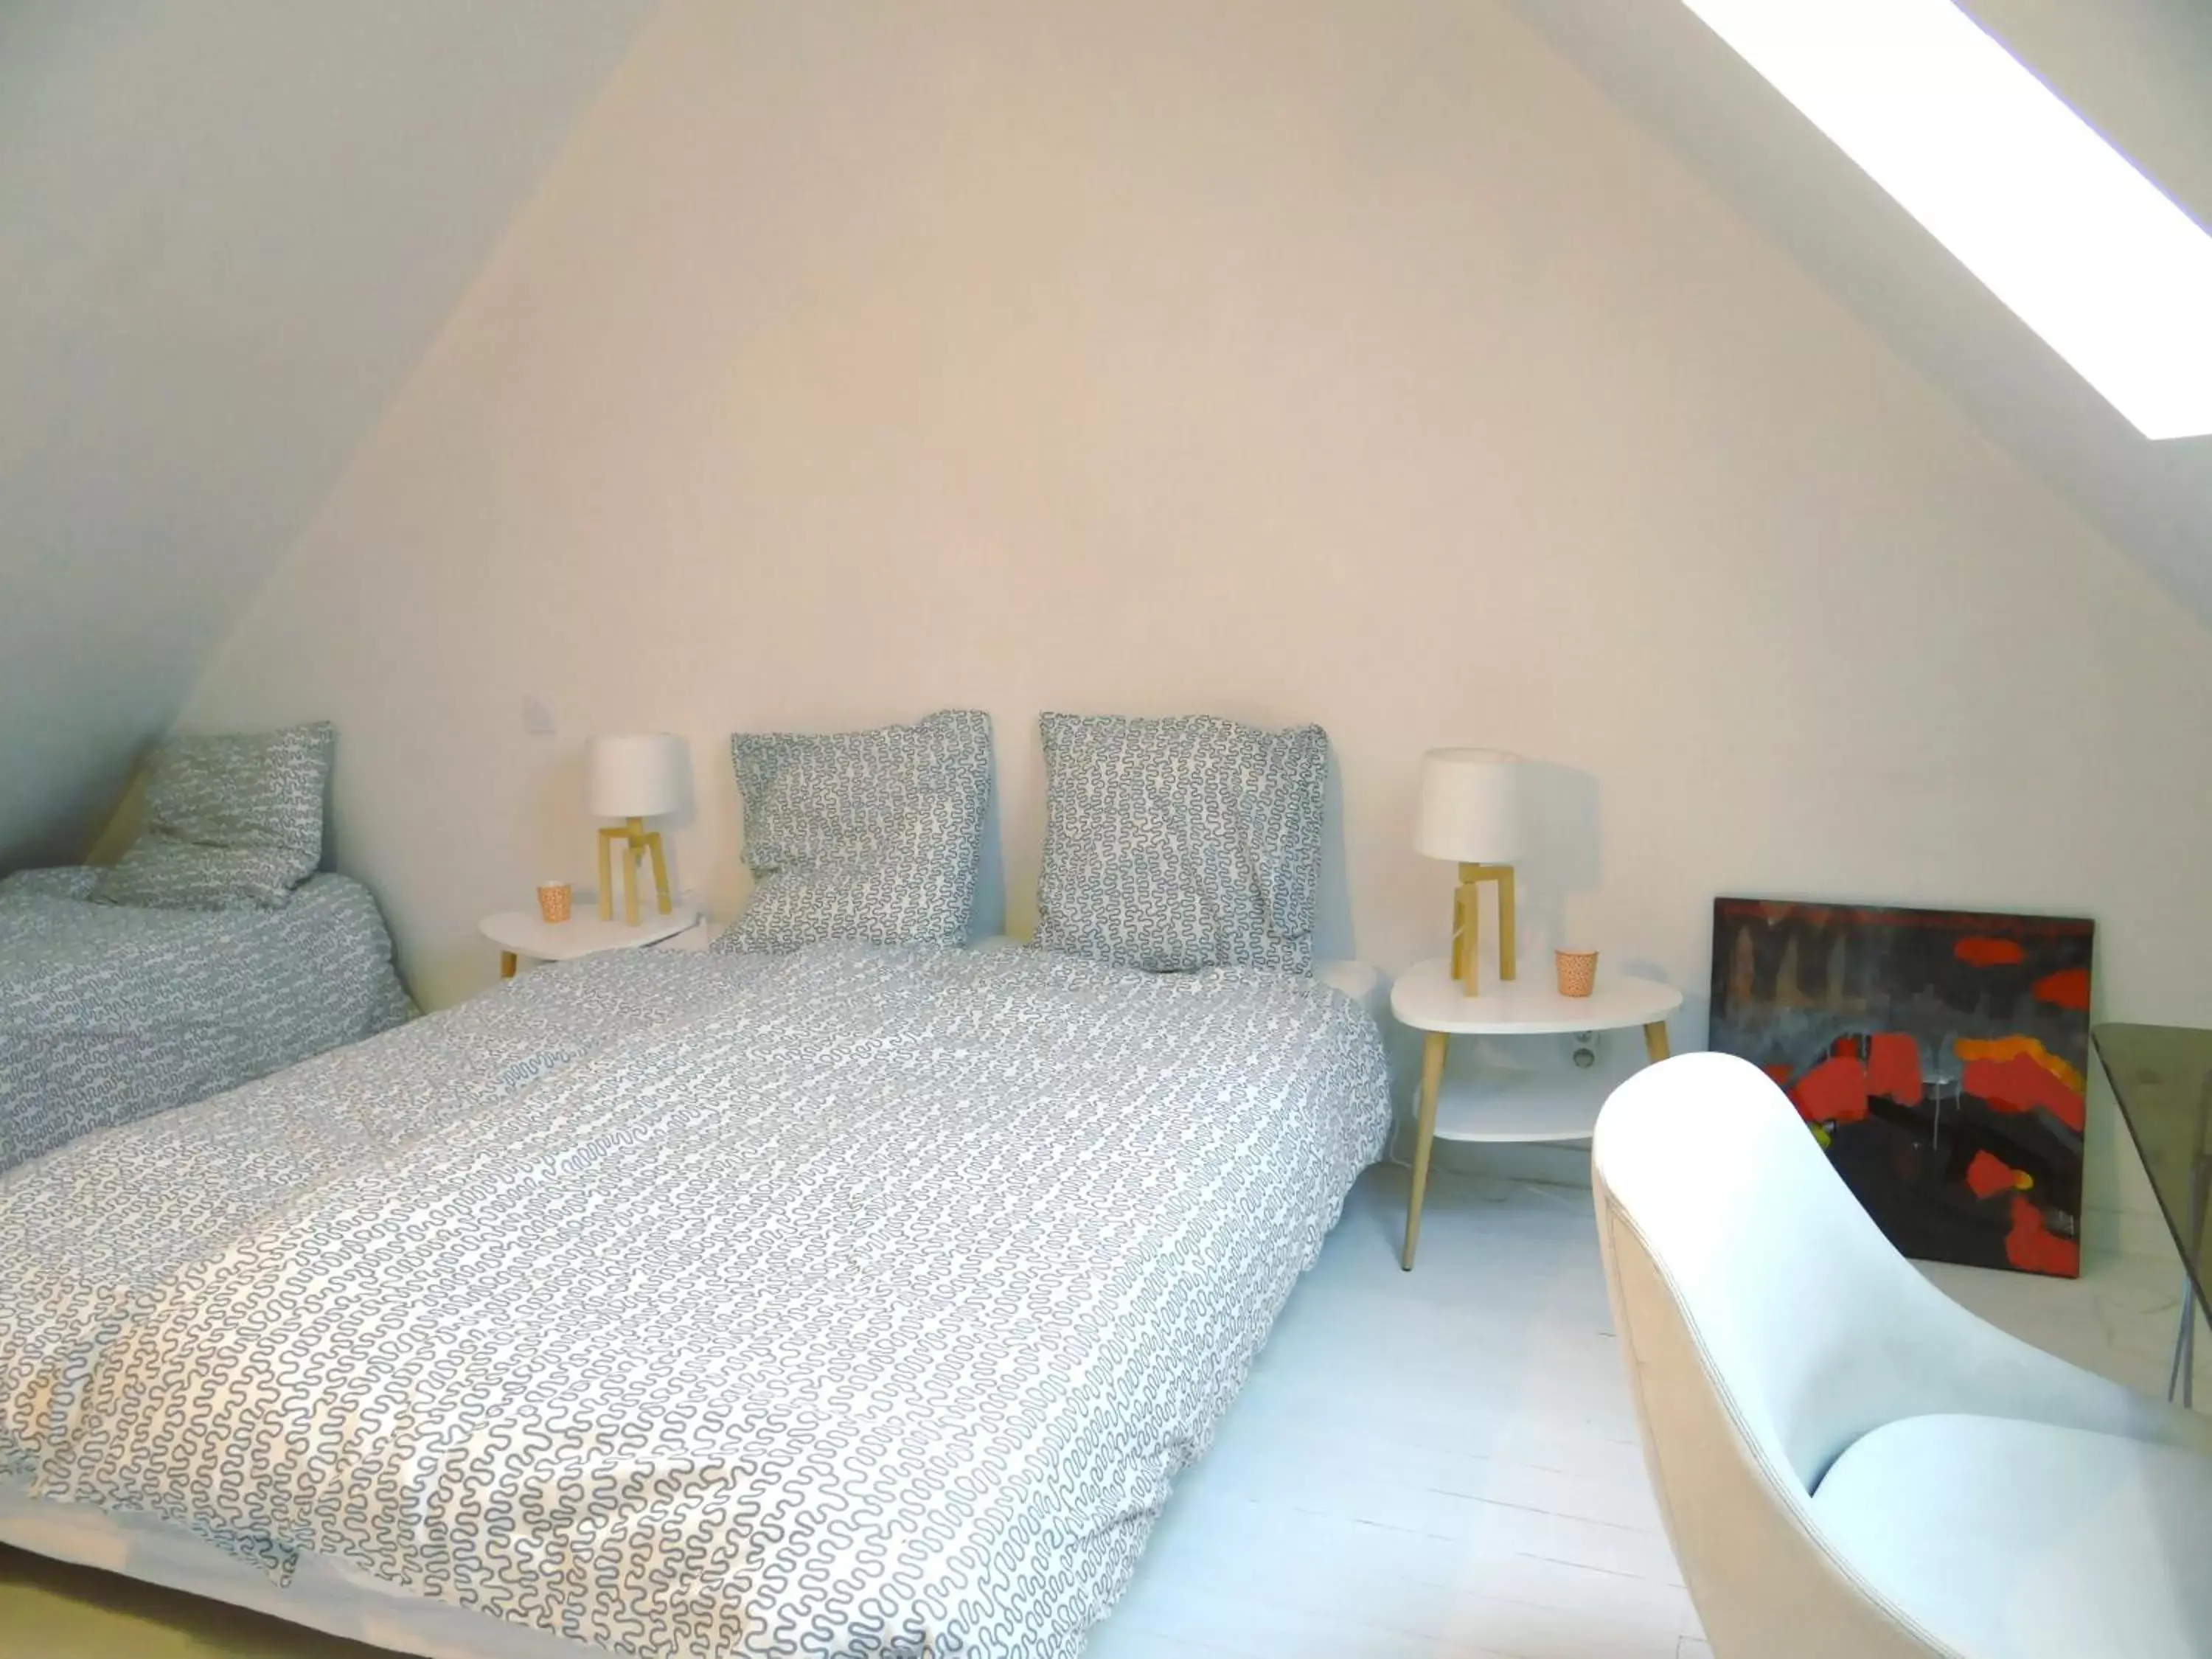 Bed, Room Photo in Les Viviers Maison d'hôtes B&B